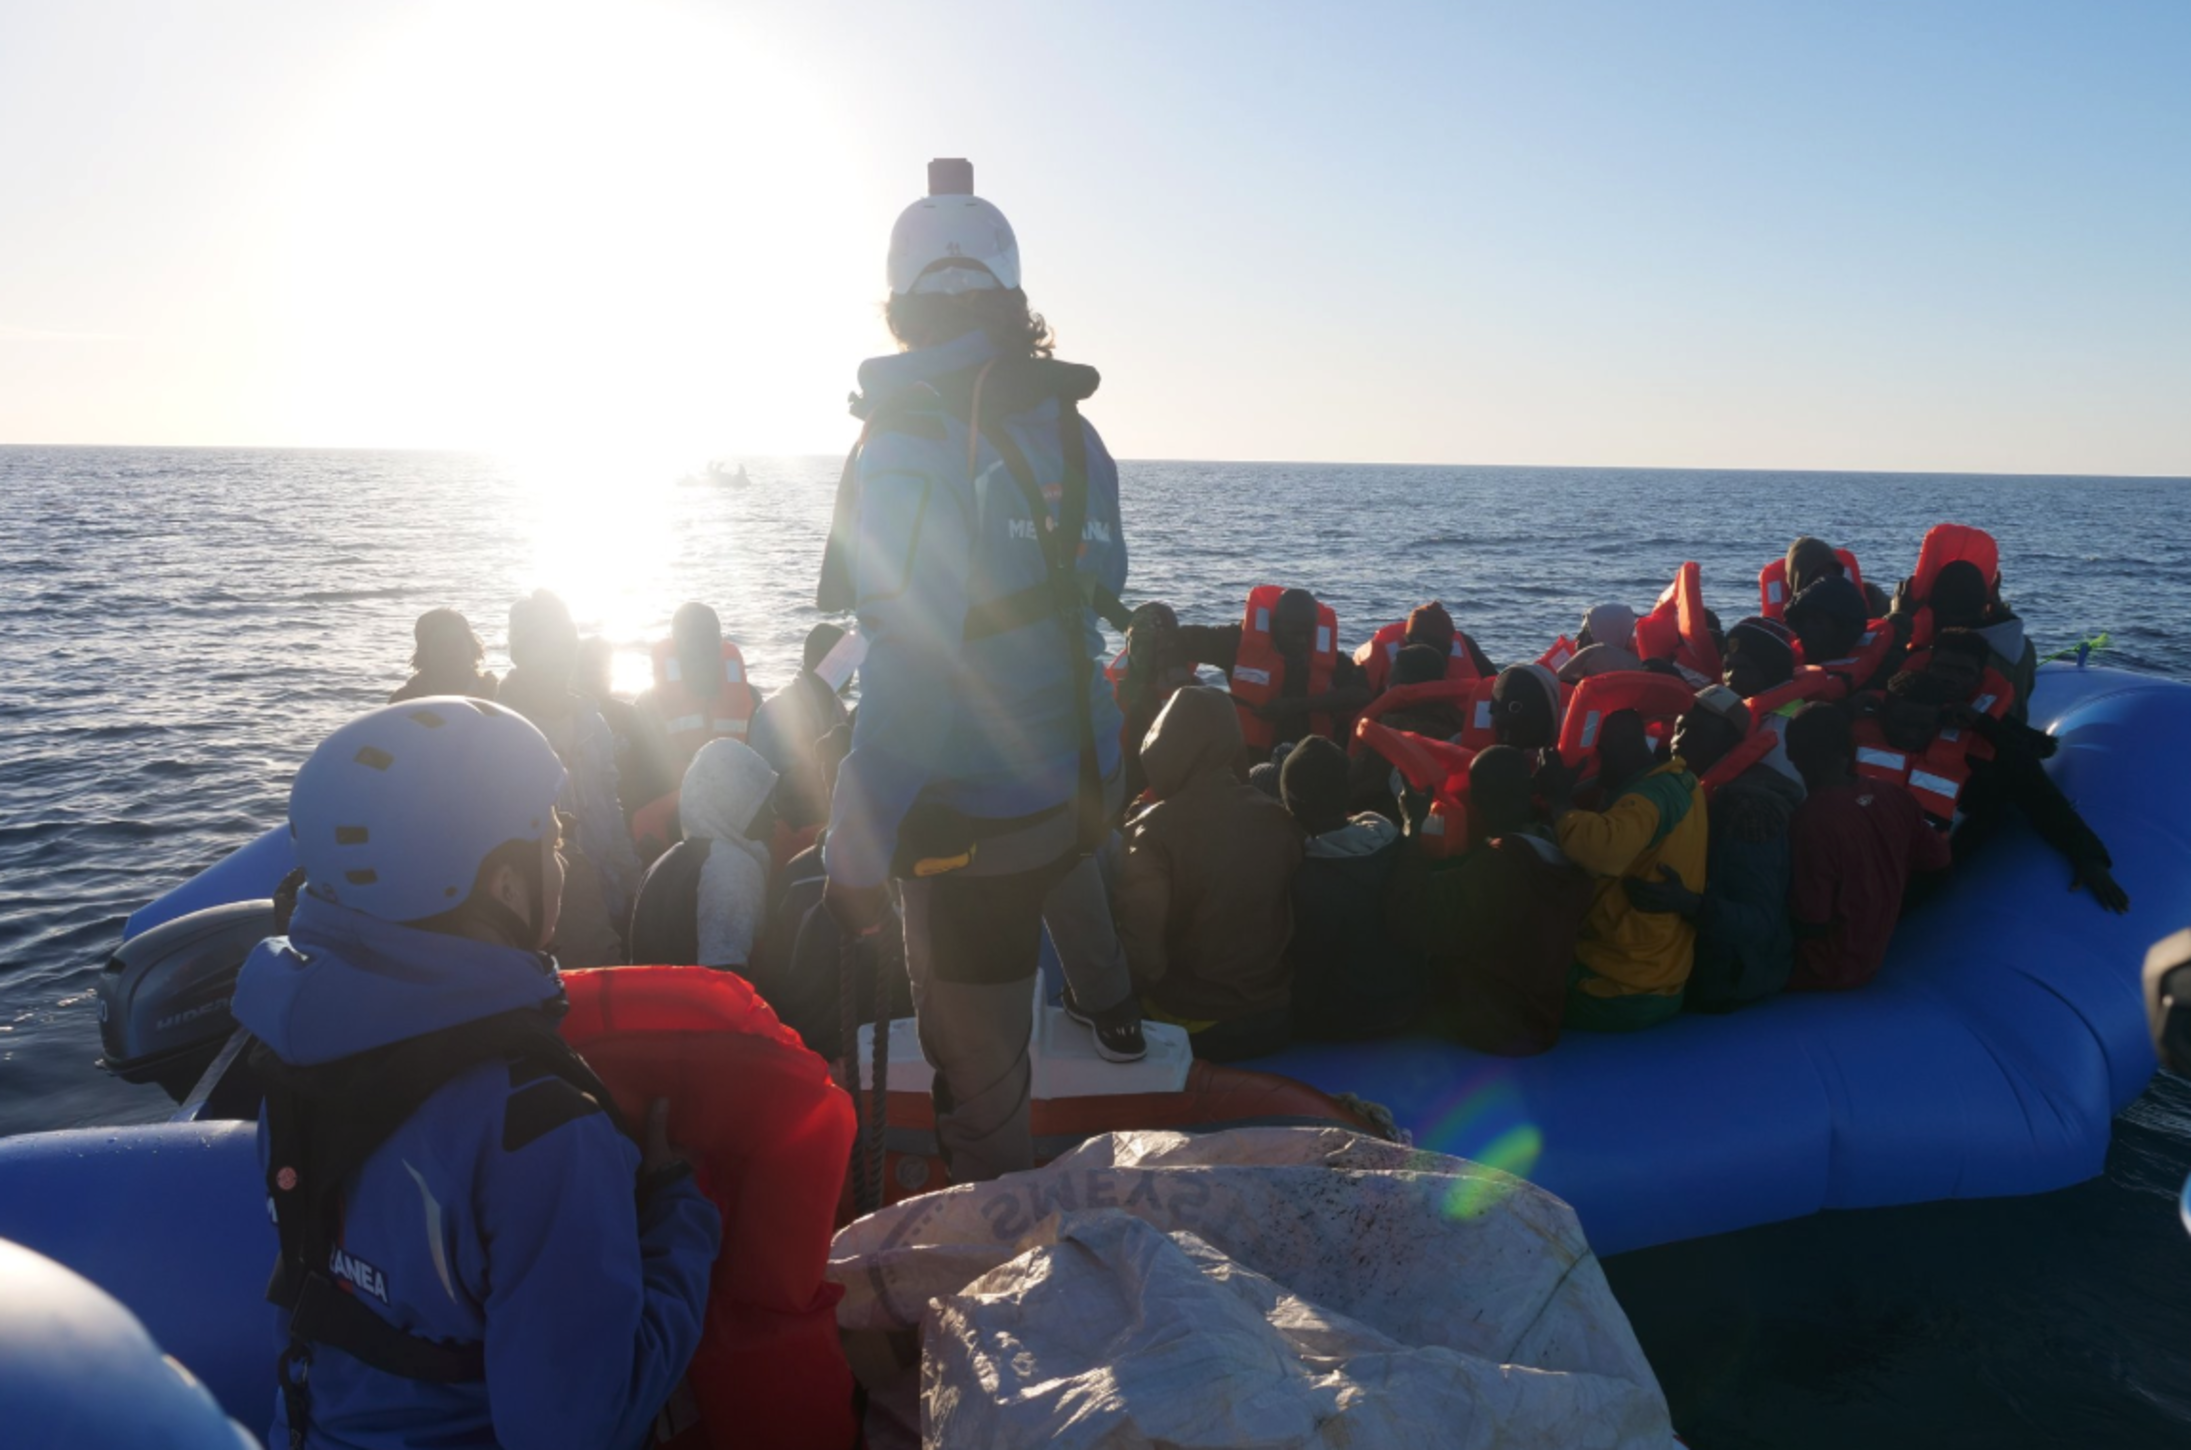 Gdf sequestra Mare Jonio: nave entra in  porto a Lampedusa, migranti a terra. Salvini: “Ha violato le regole, arrestate responsabili”